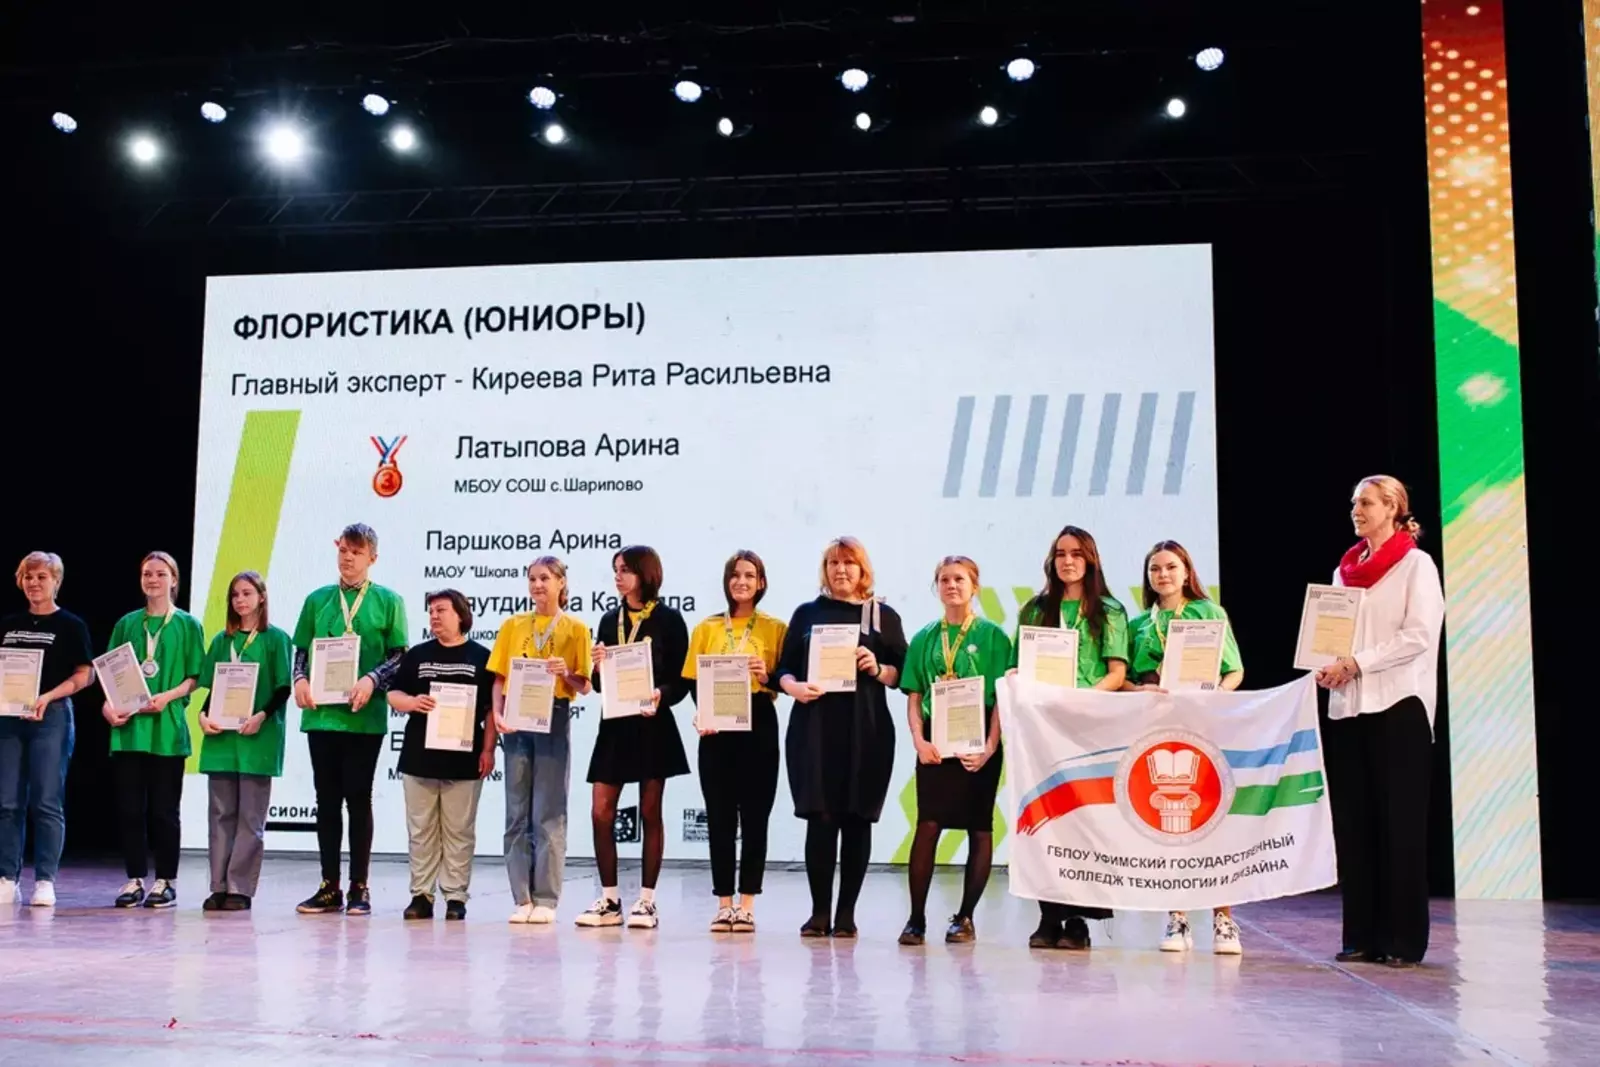 В Башкортостане определены победители регионального этапа Всероссийского чемпионатного движения по профессиональному мастерству